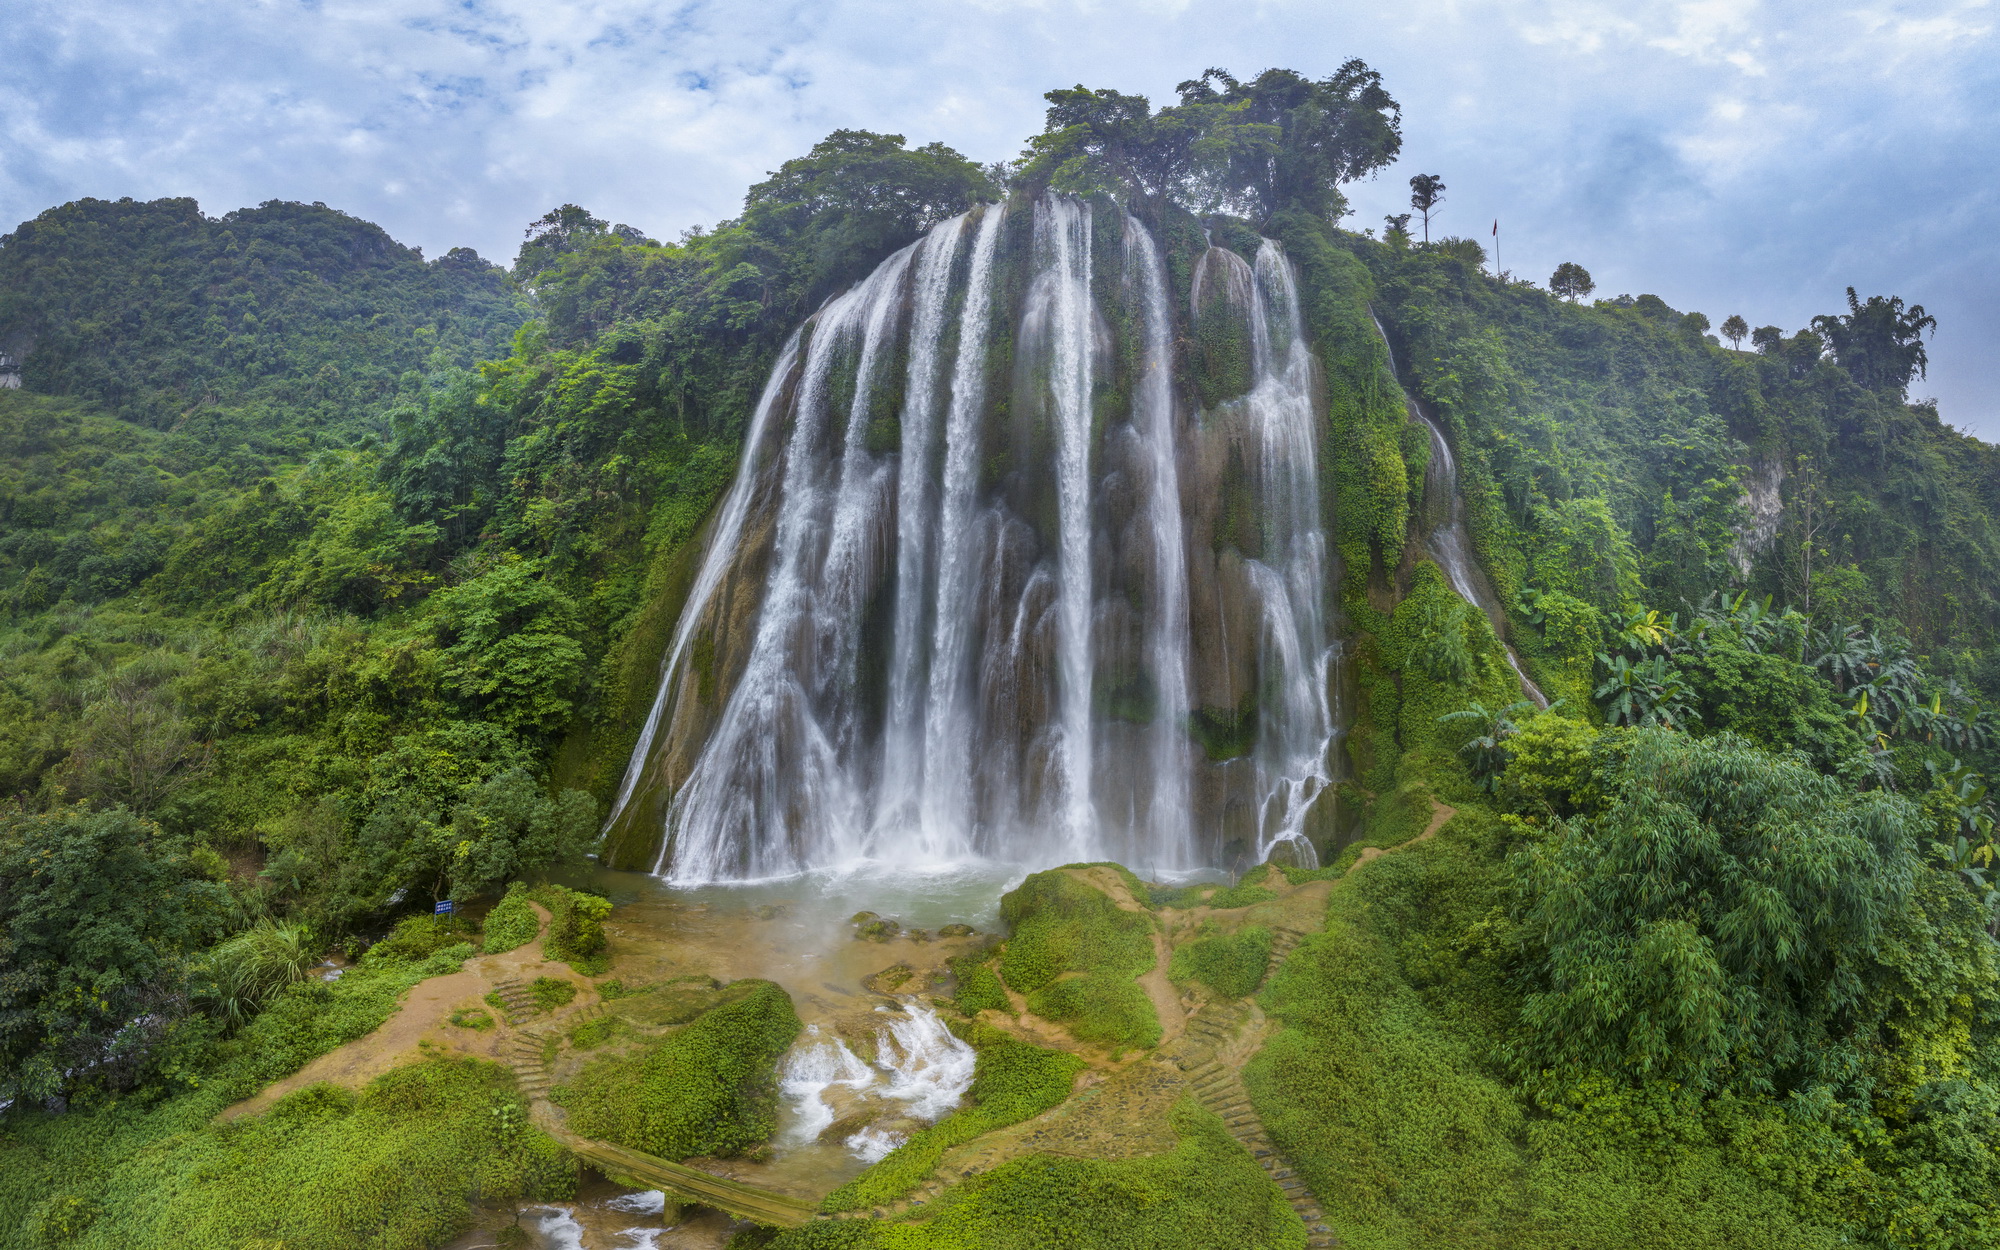  Jingxi, Guangxi: Sandiiling Waterfall is spectacular